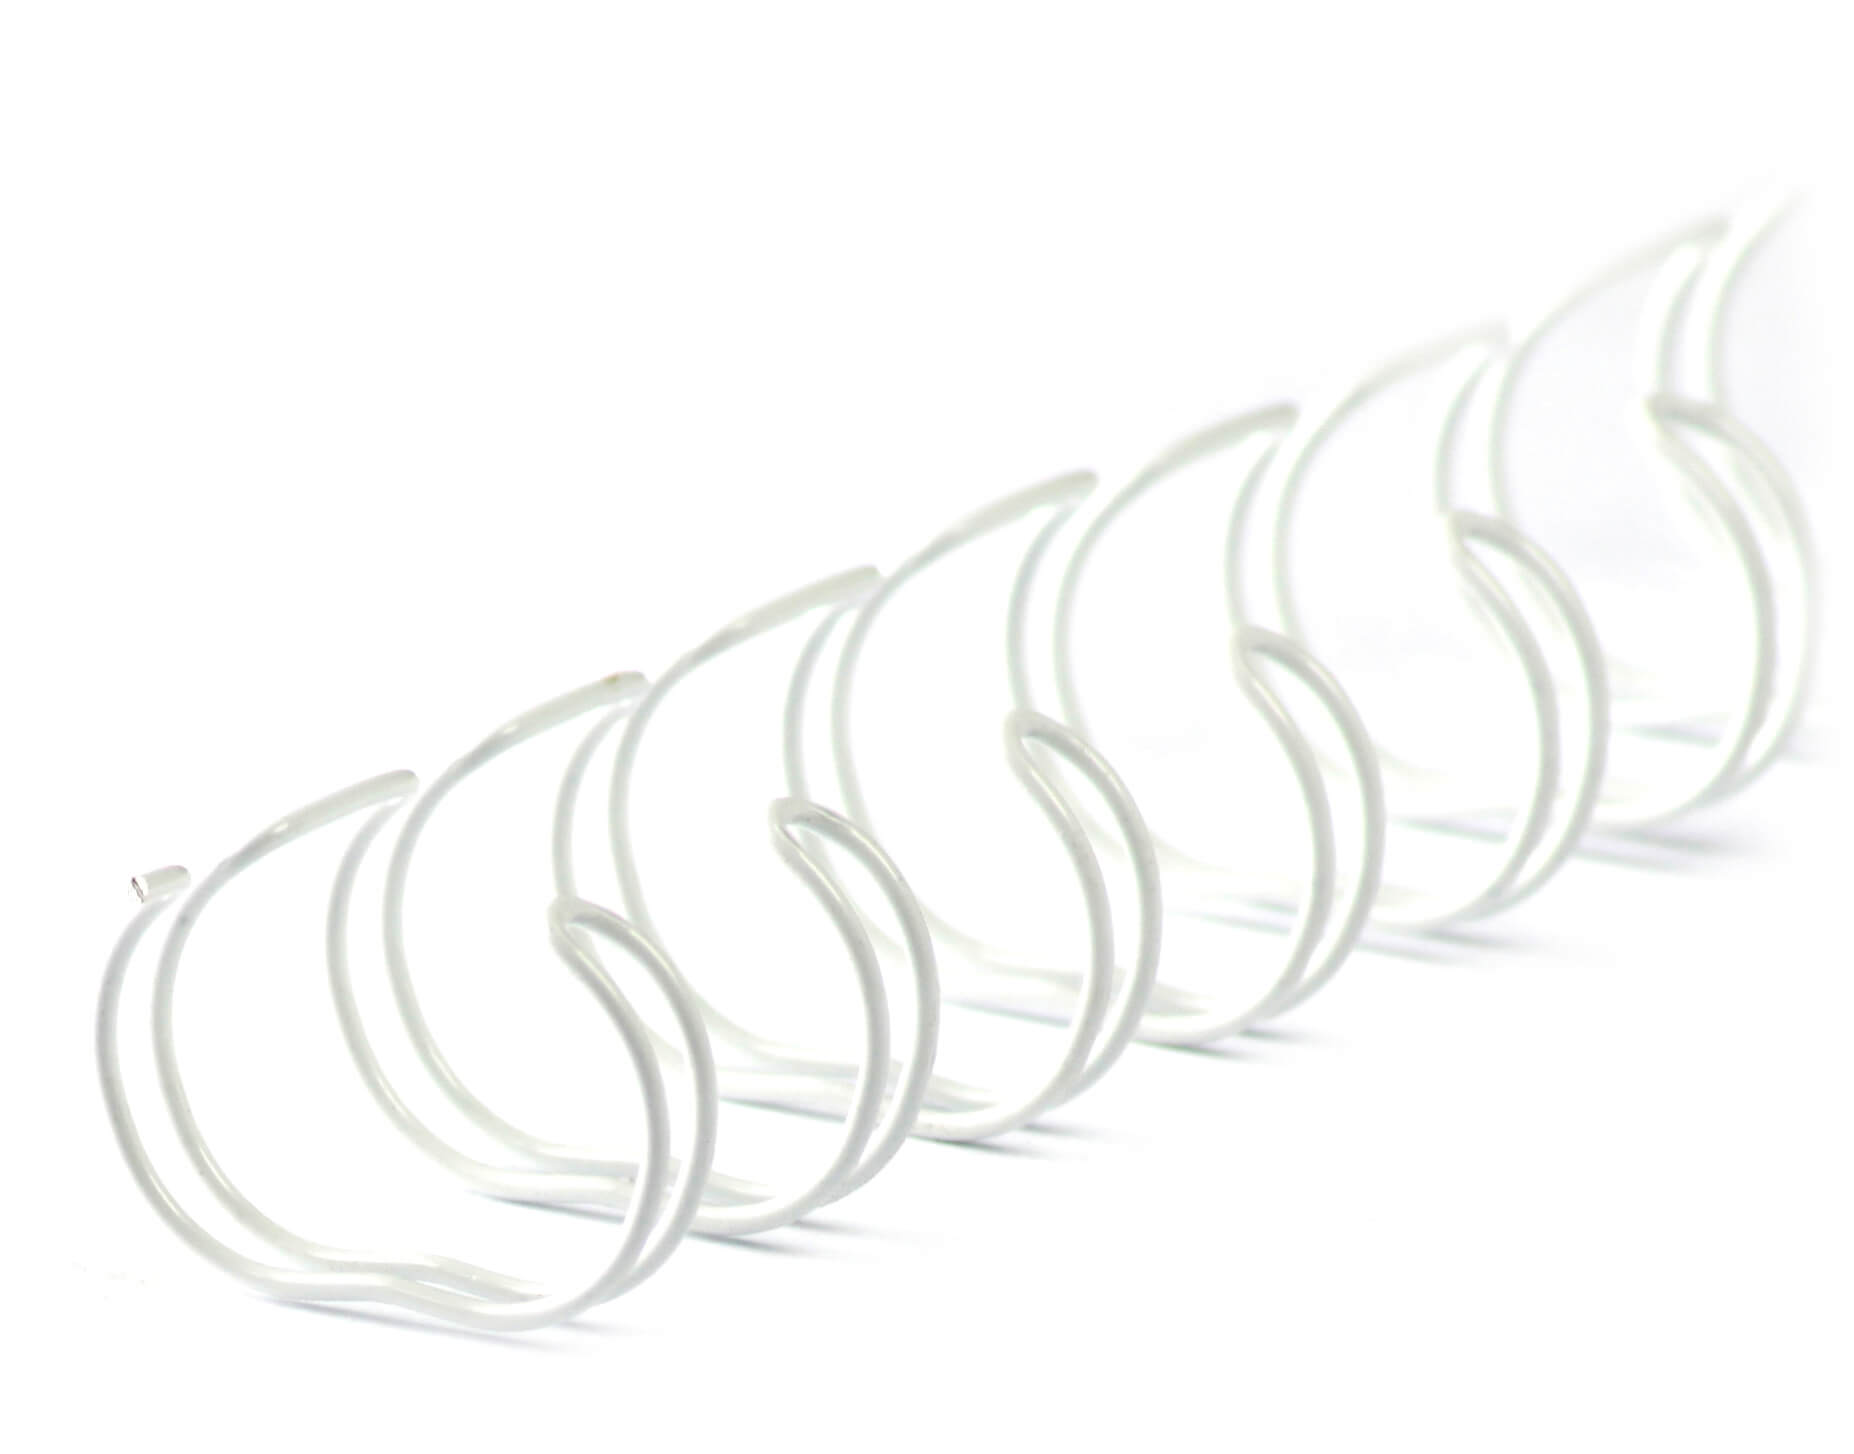 Drahtbinderücken 23 Ringe A4 Ø11,1mm, 2:1, Farbe weiß | Bestnr. 23RM111WS-WS